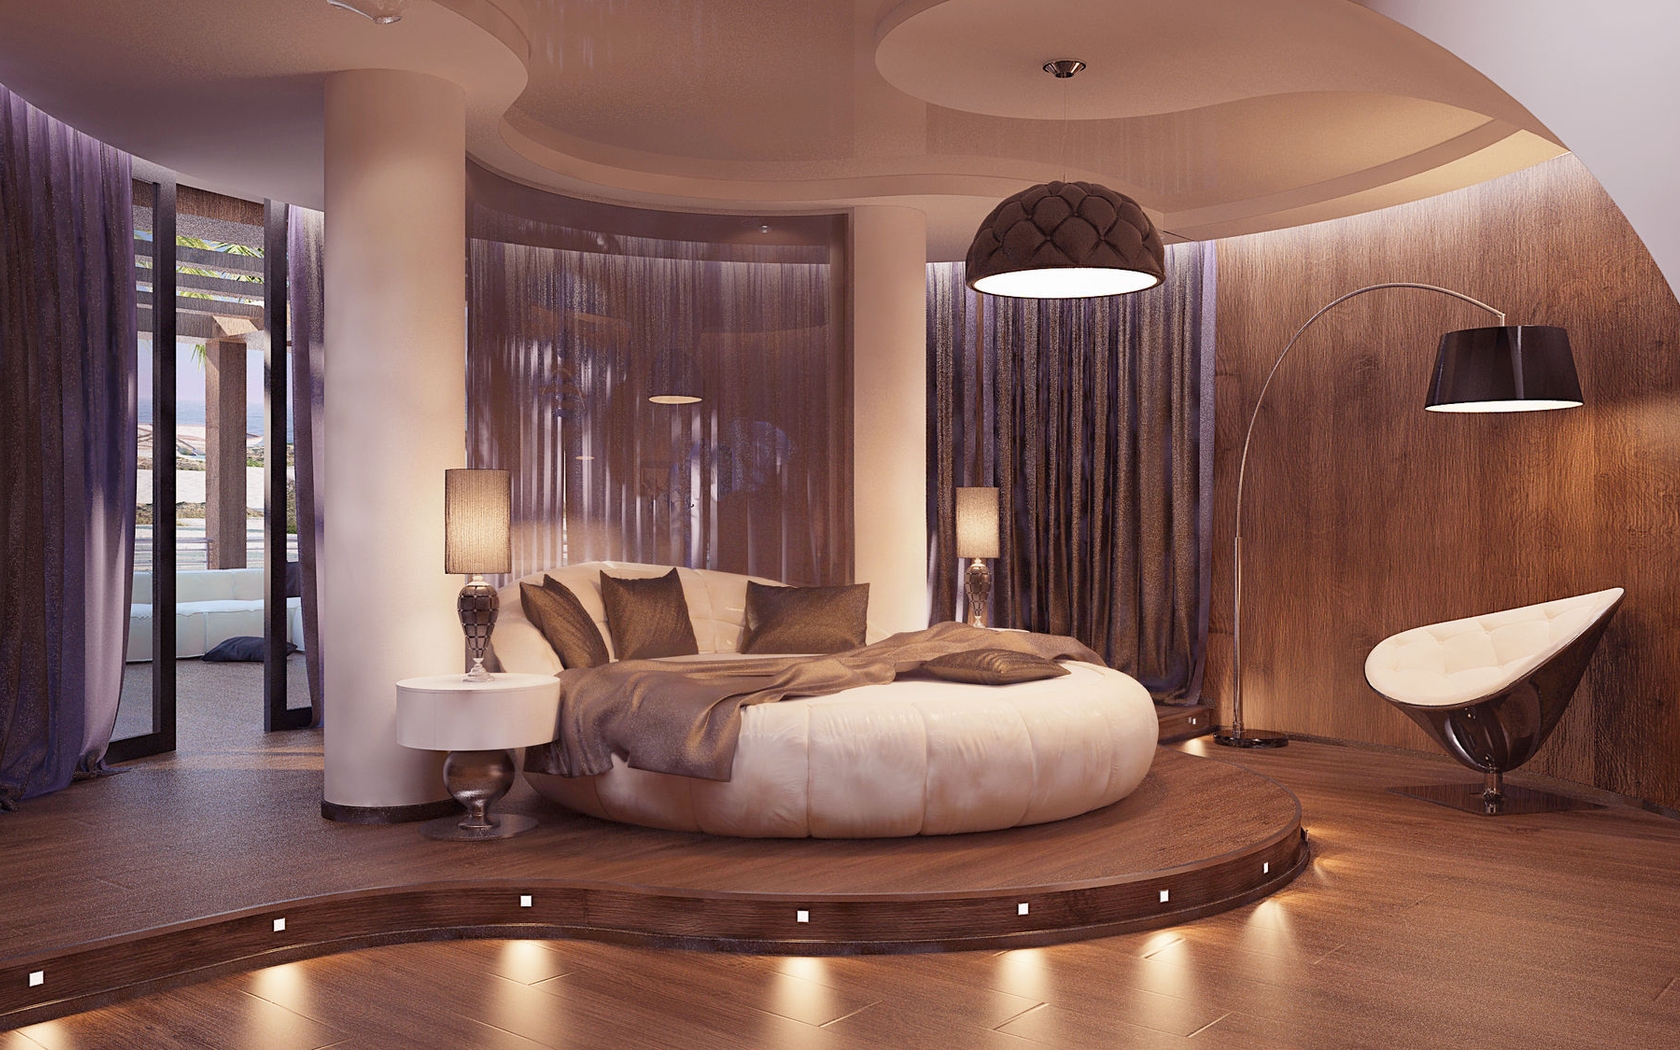 Картинка: Спальня, кровать, круглая, подушки, светильник, торшер, шторы, колонны